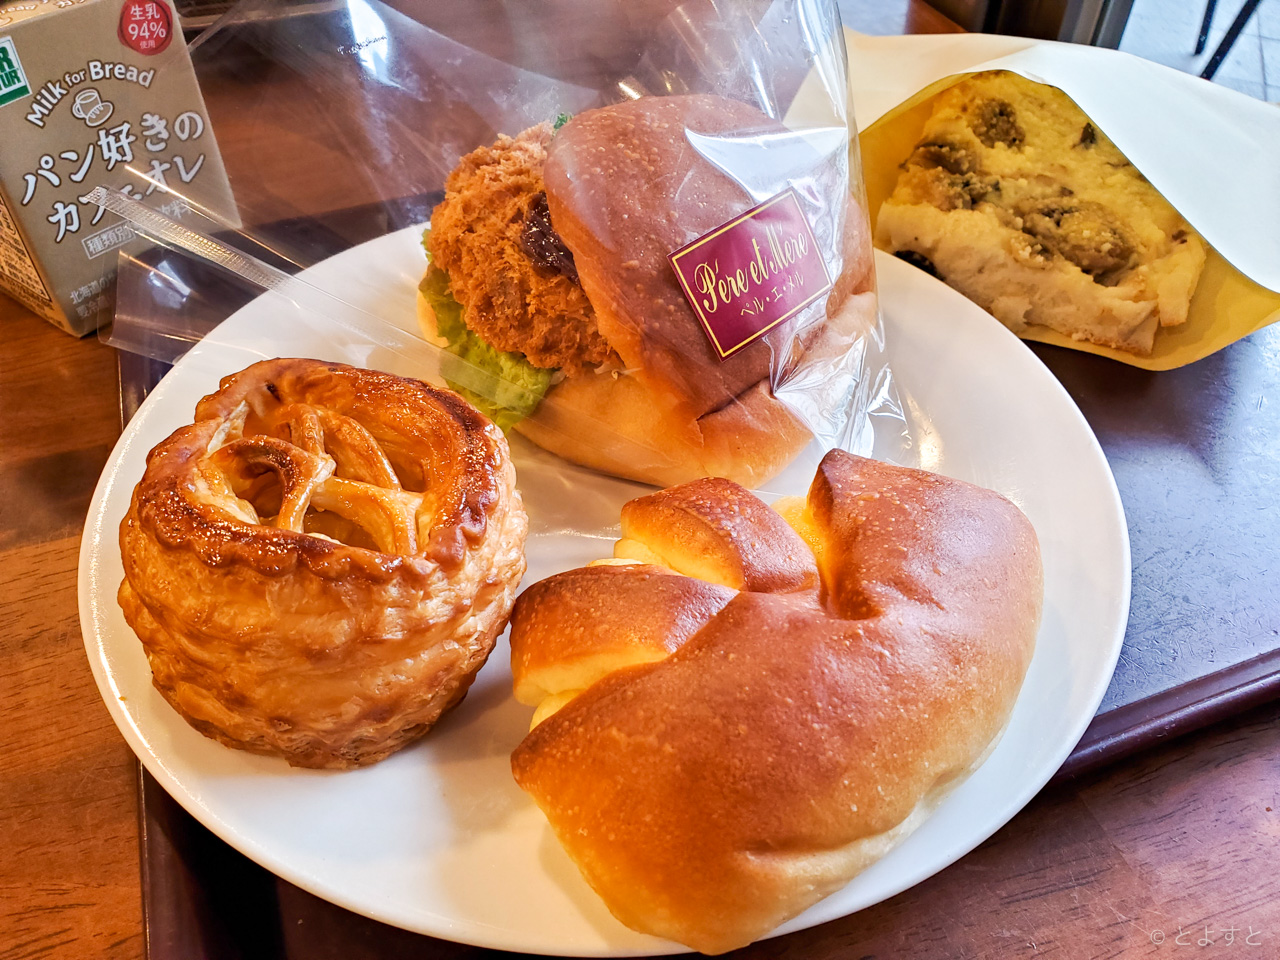 豊洲駅前のパン屋「ペル・エ・メル」で、贅沢な牛肉入りカレーパンとバゲット等を購入